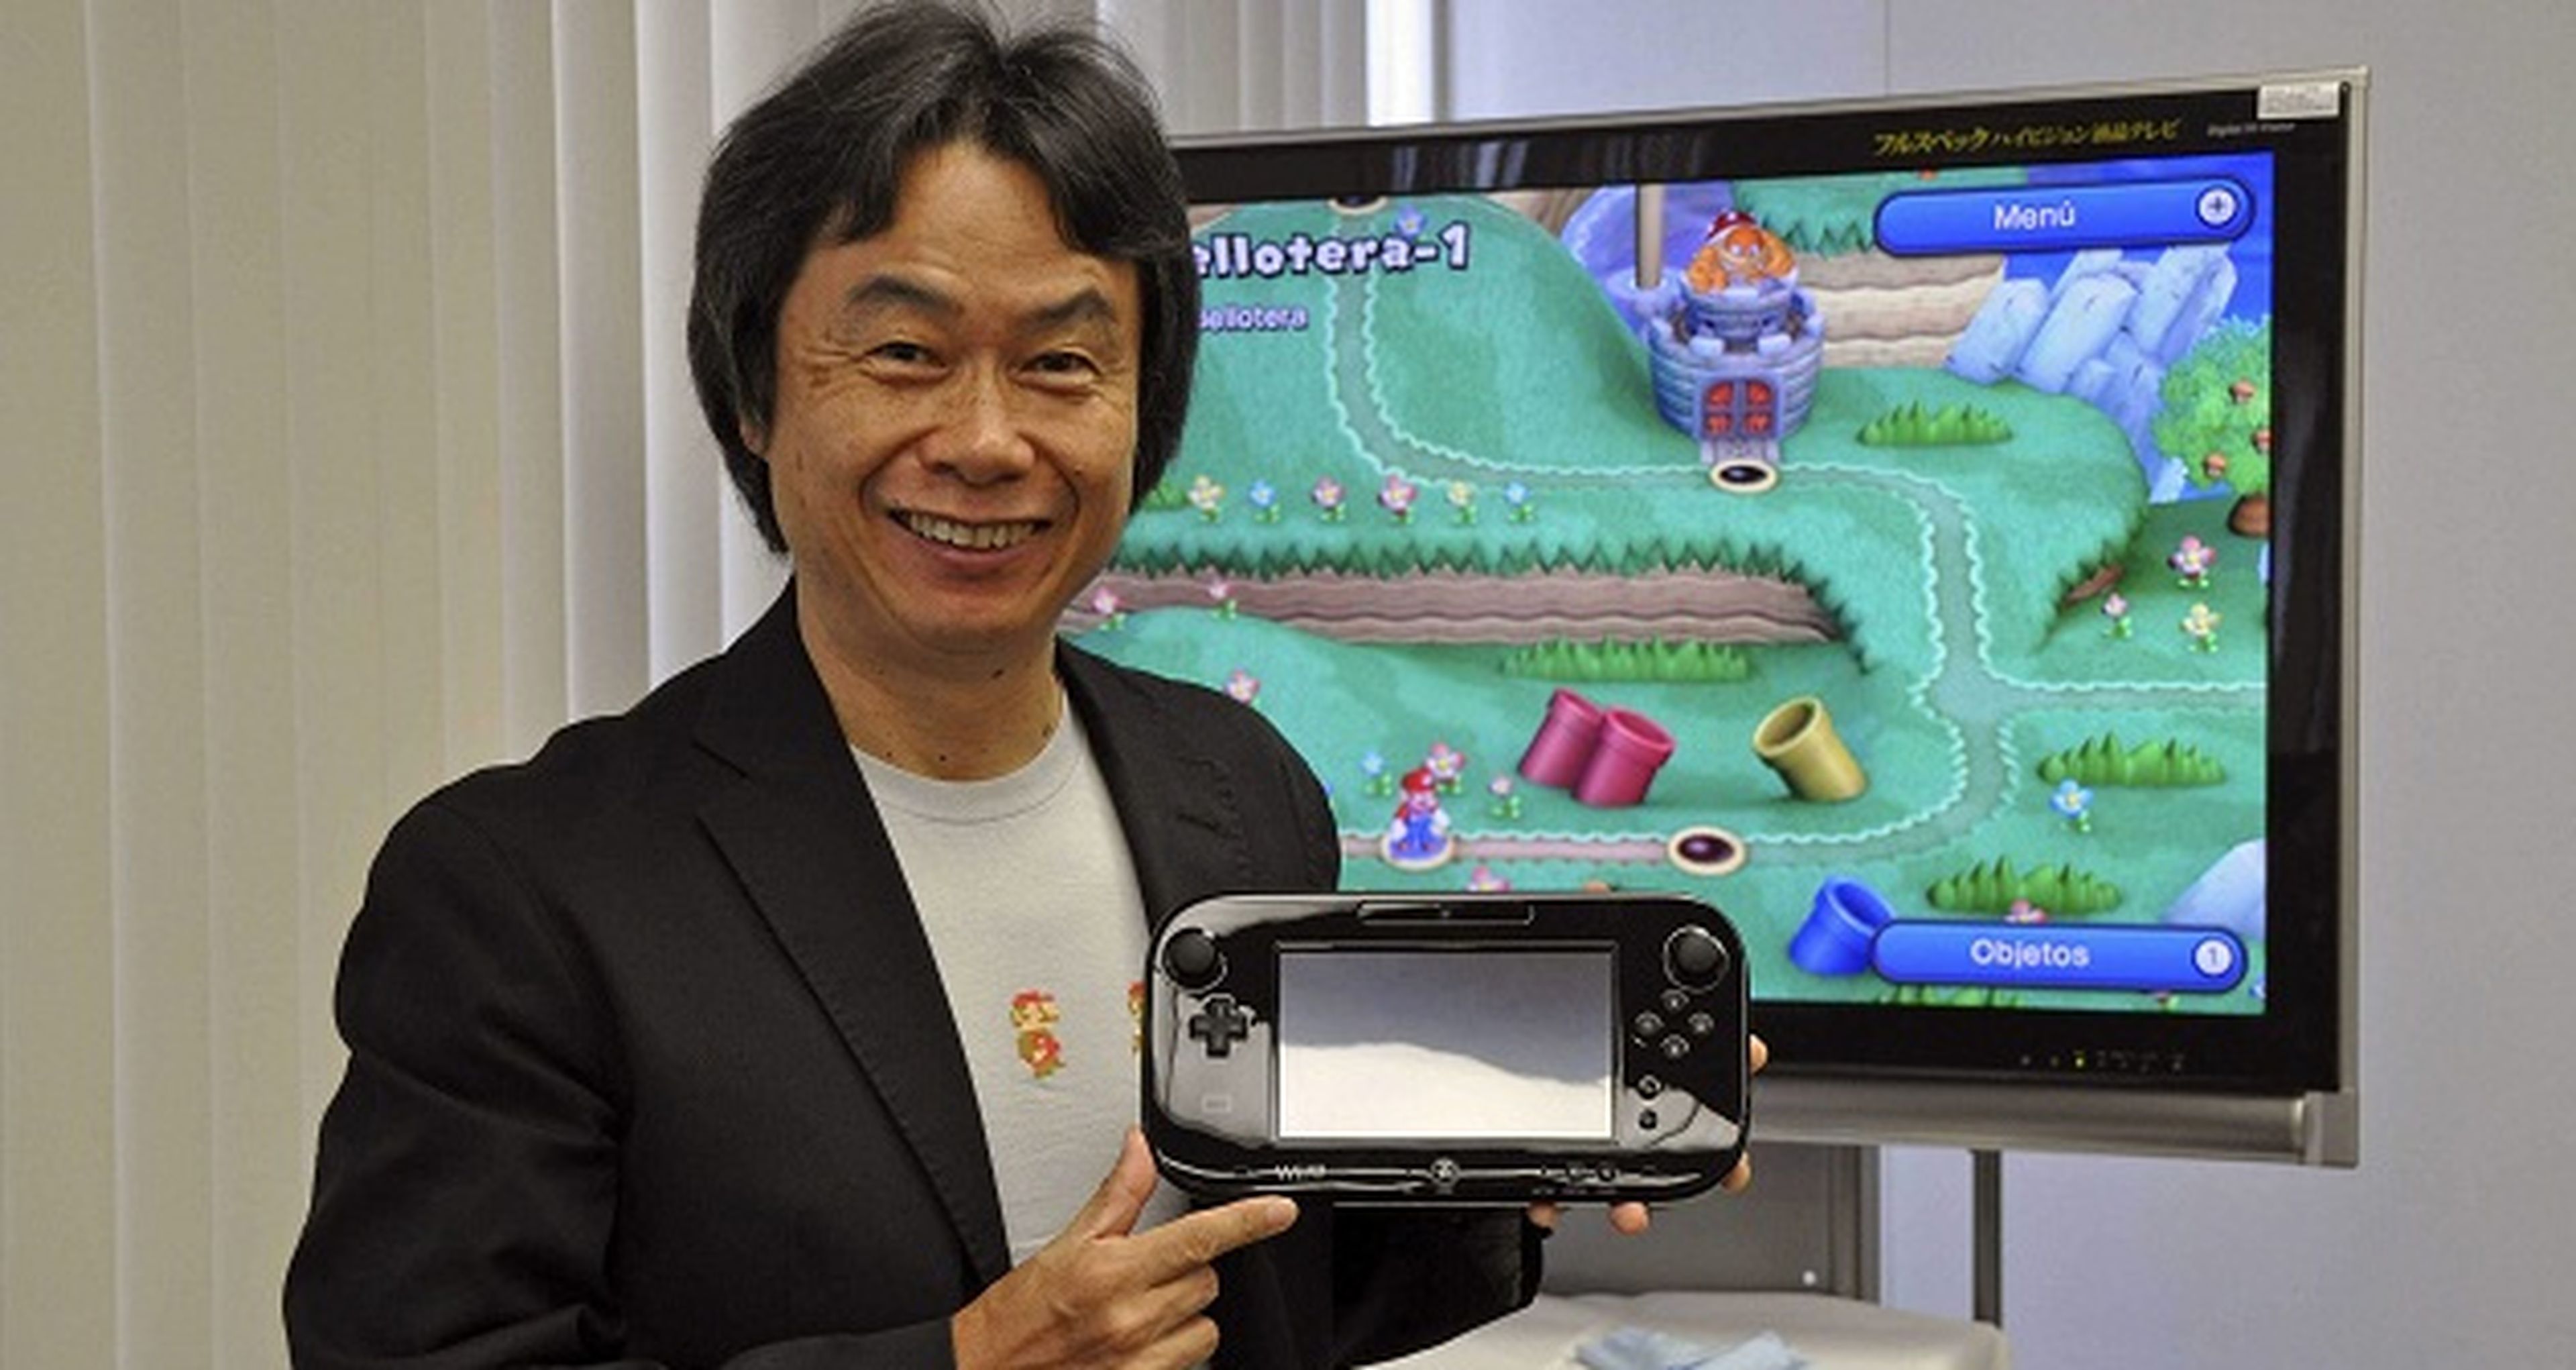 El menú de Wii U mejorará, según Miyamoto